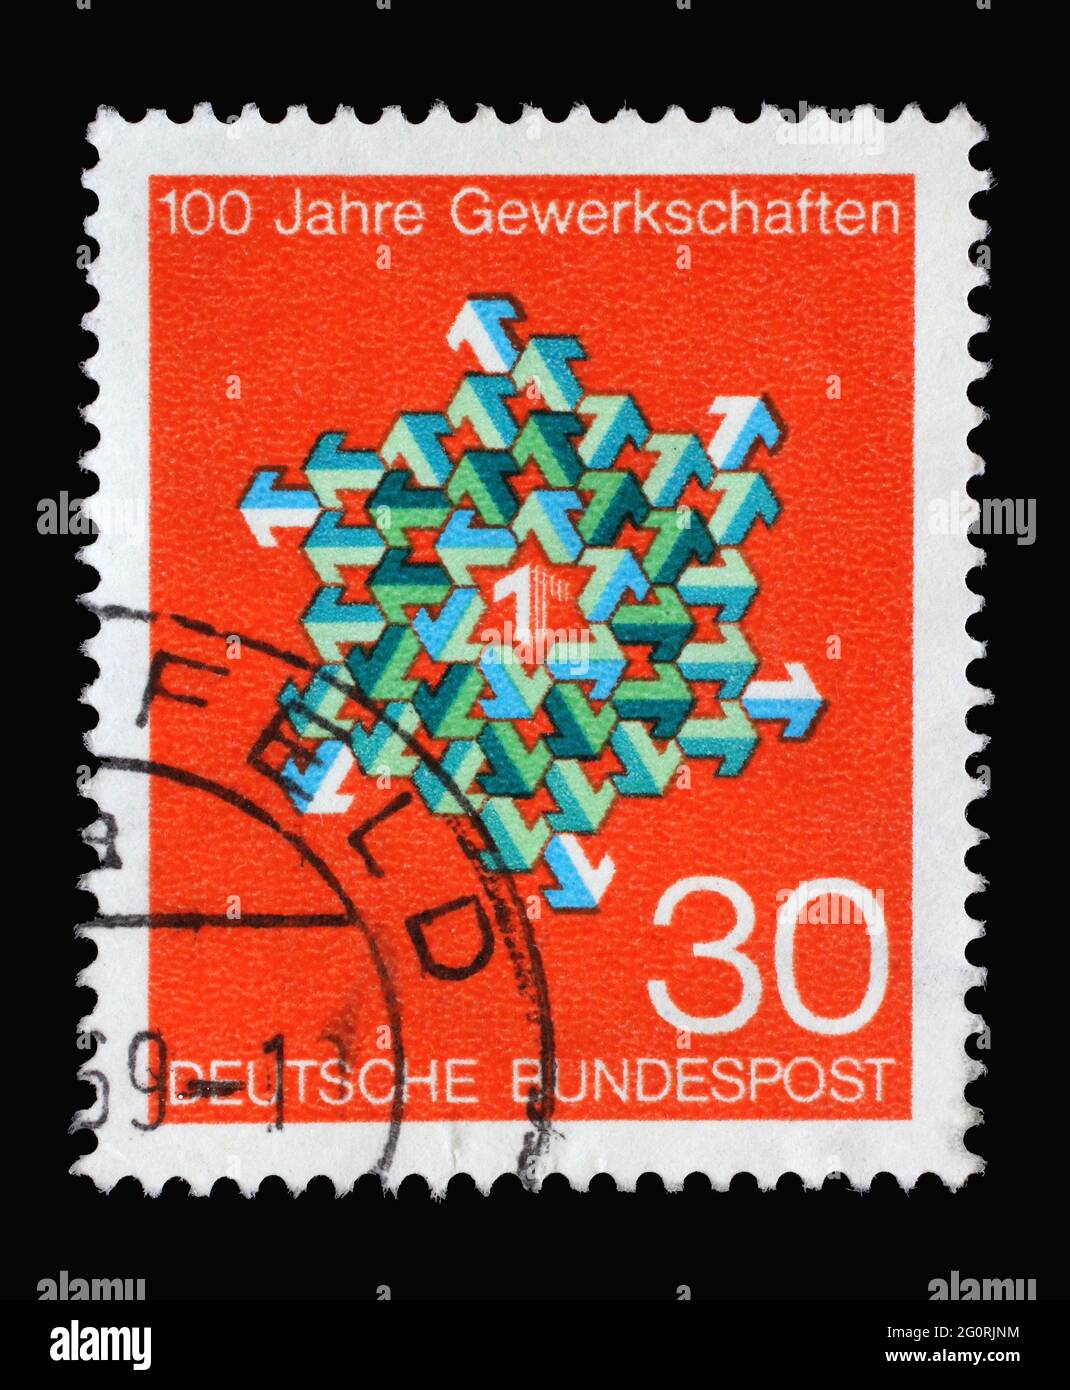 In Deutschland gedruckte Marke mit grünen und weißen Pfeilen in verschiedenen Richtungen, 100 Jahre Deutsche Gewerkschaften, um 1968 Stockfoto